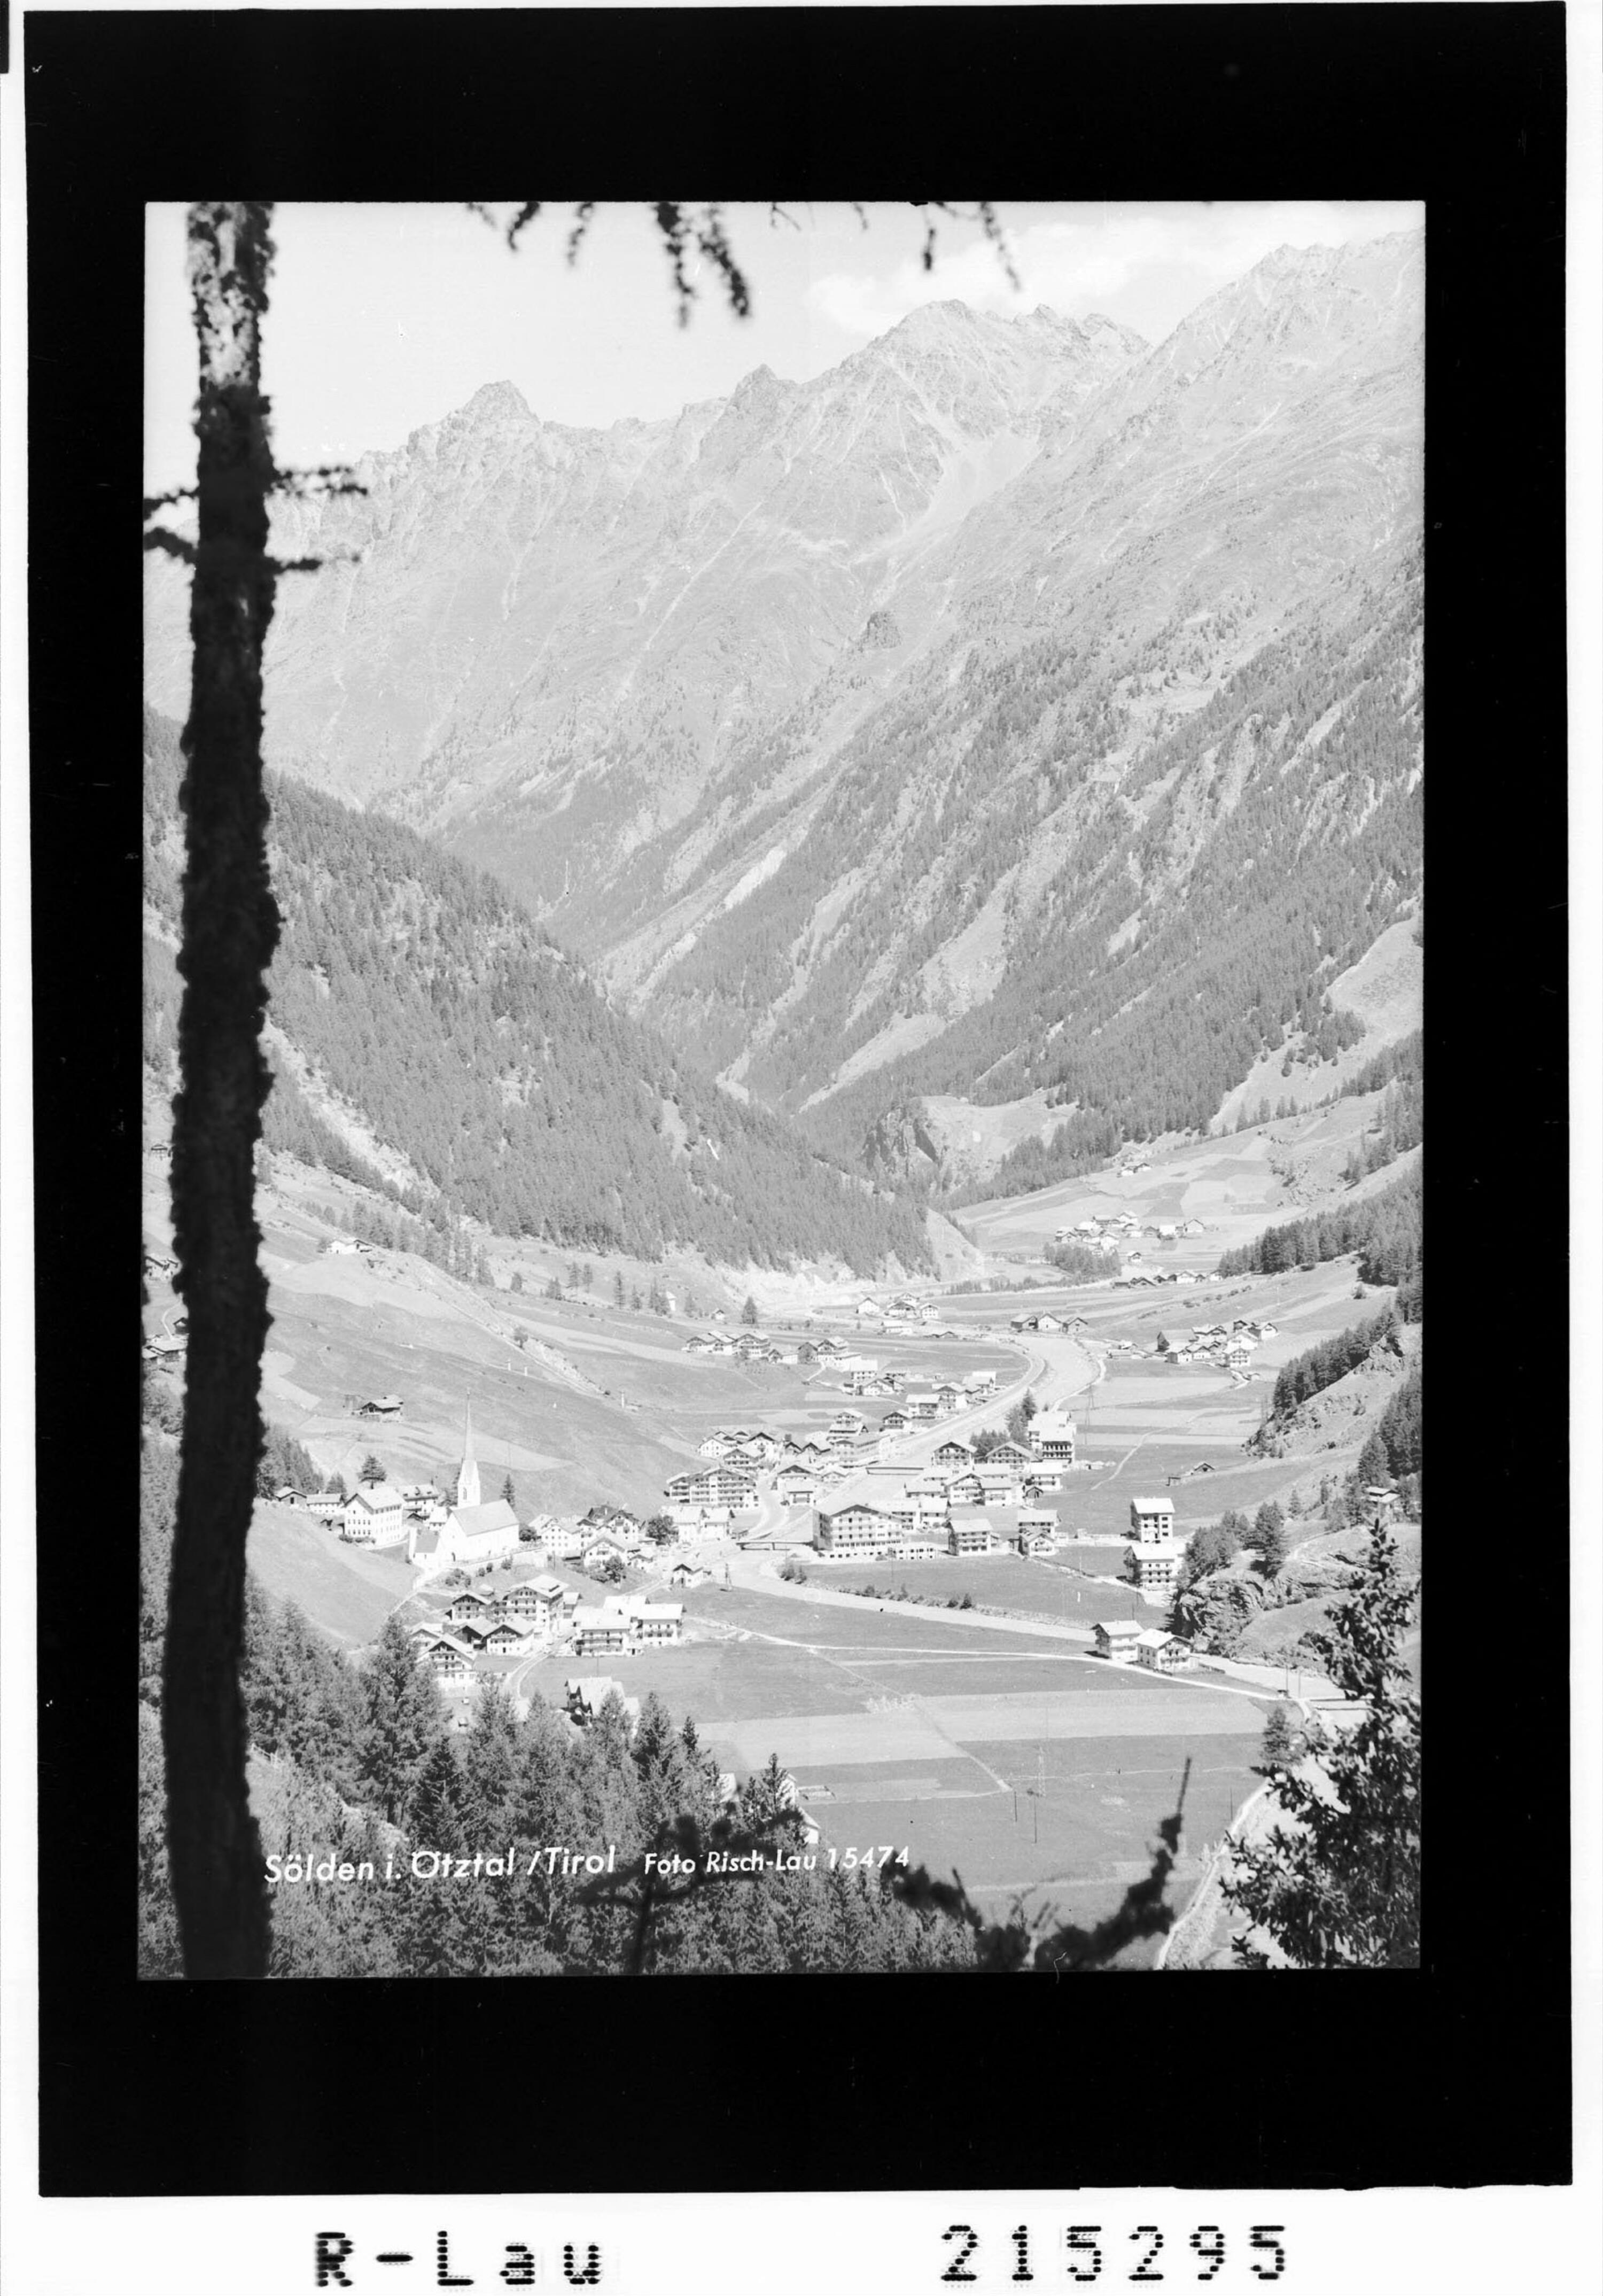 Sölden im Ötztal / Tirol></div>


    <hr>
    <div class=